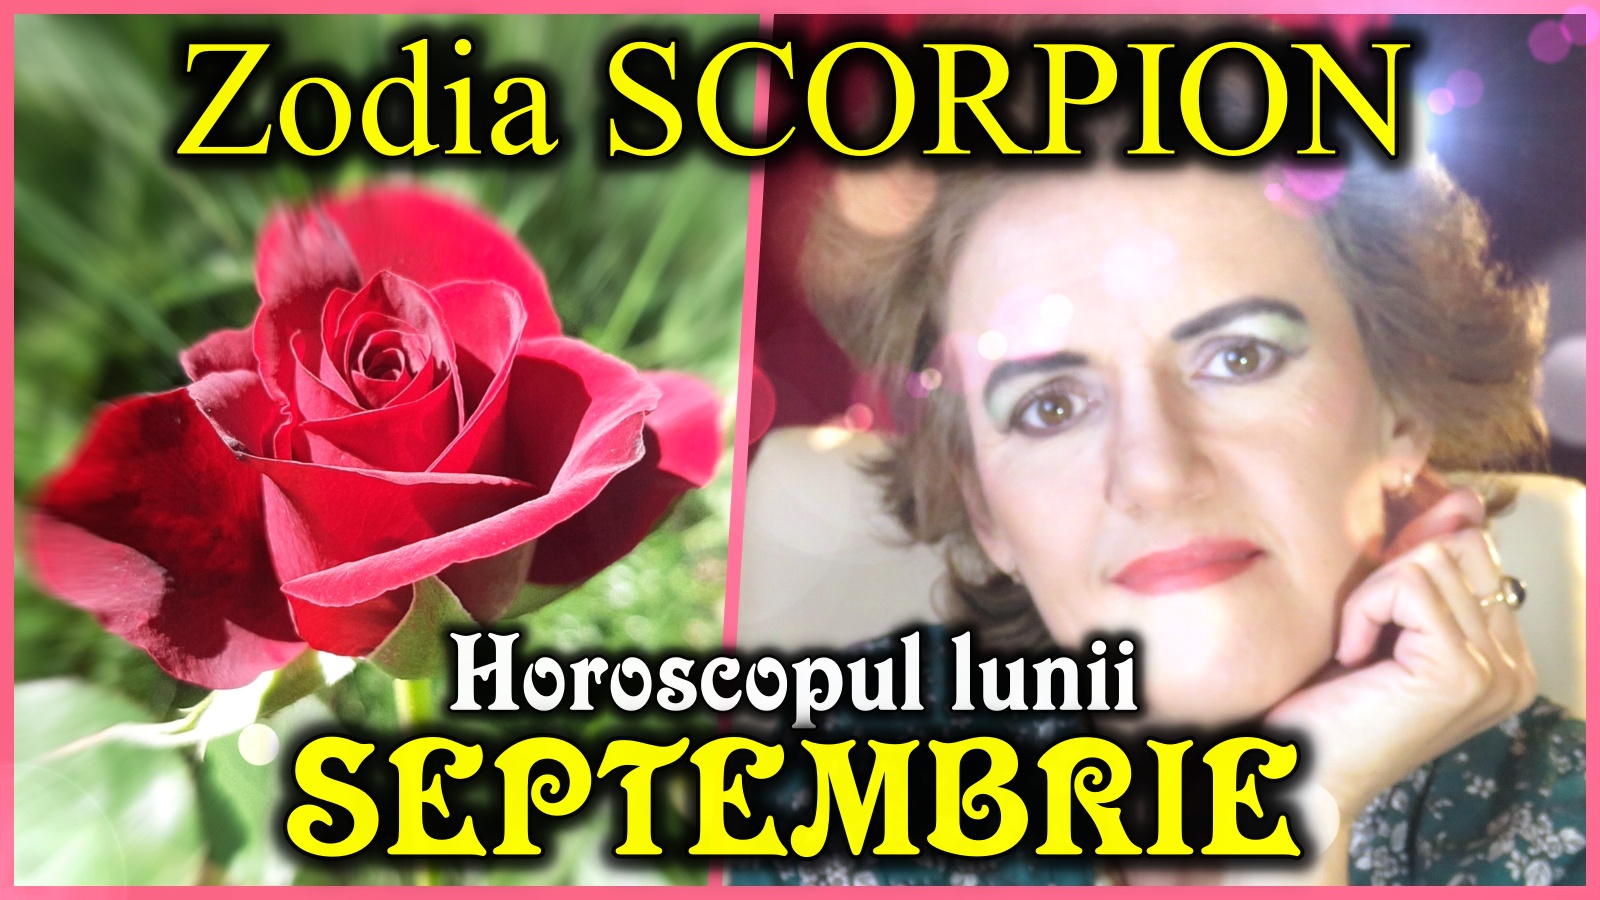 Horoscopul lunii SEPTEMBRIE  * Zodia SCORPIONULUI